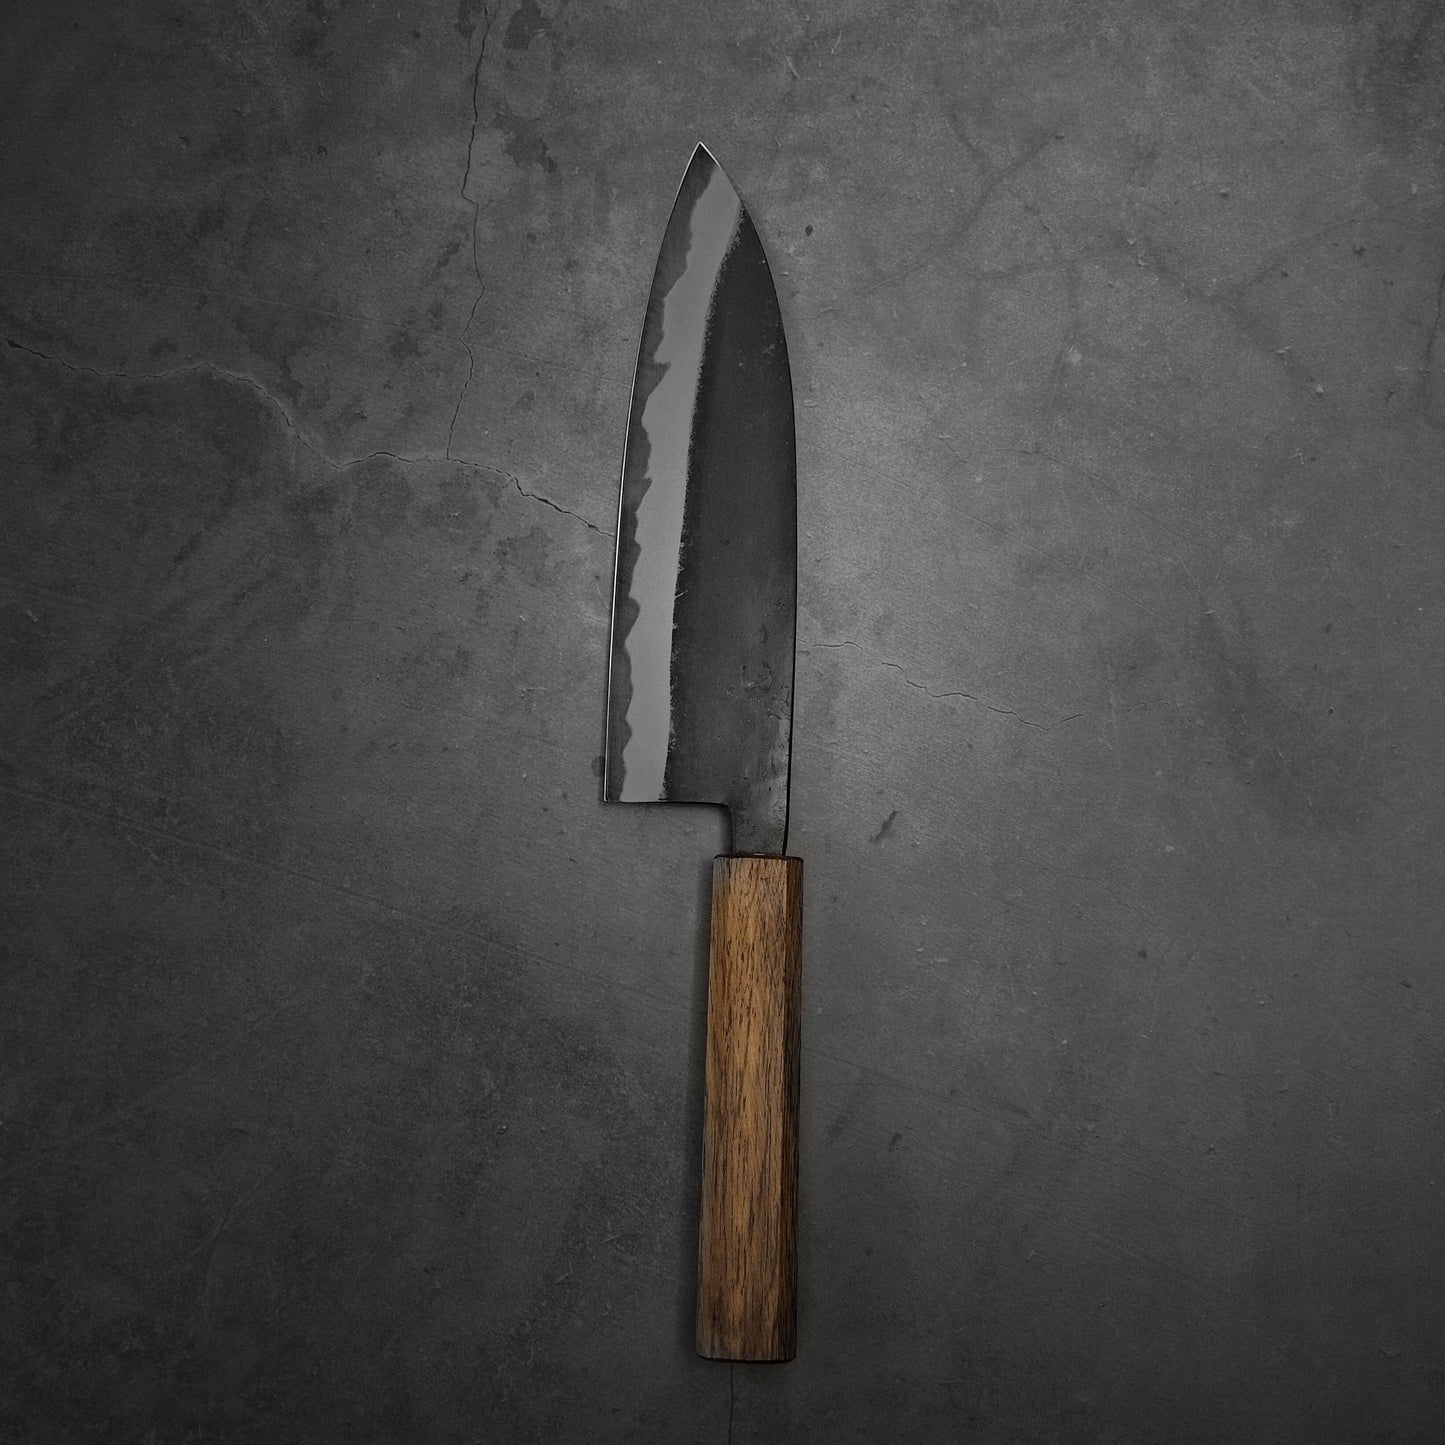 Hinokuni kurouchi shirogami#1 santoku 180mm - Zahocho Japanese Knives